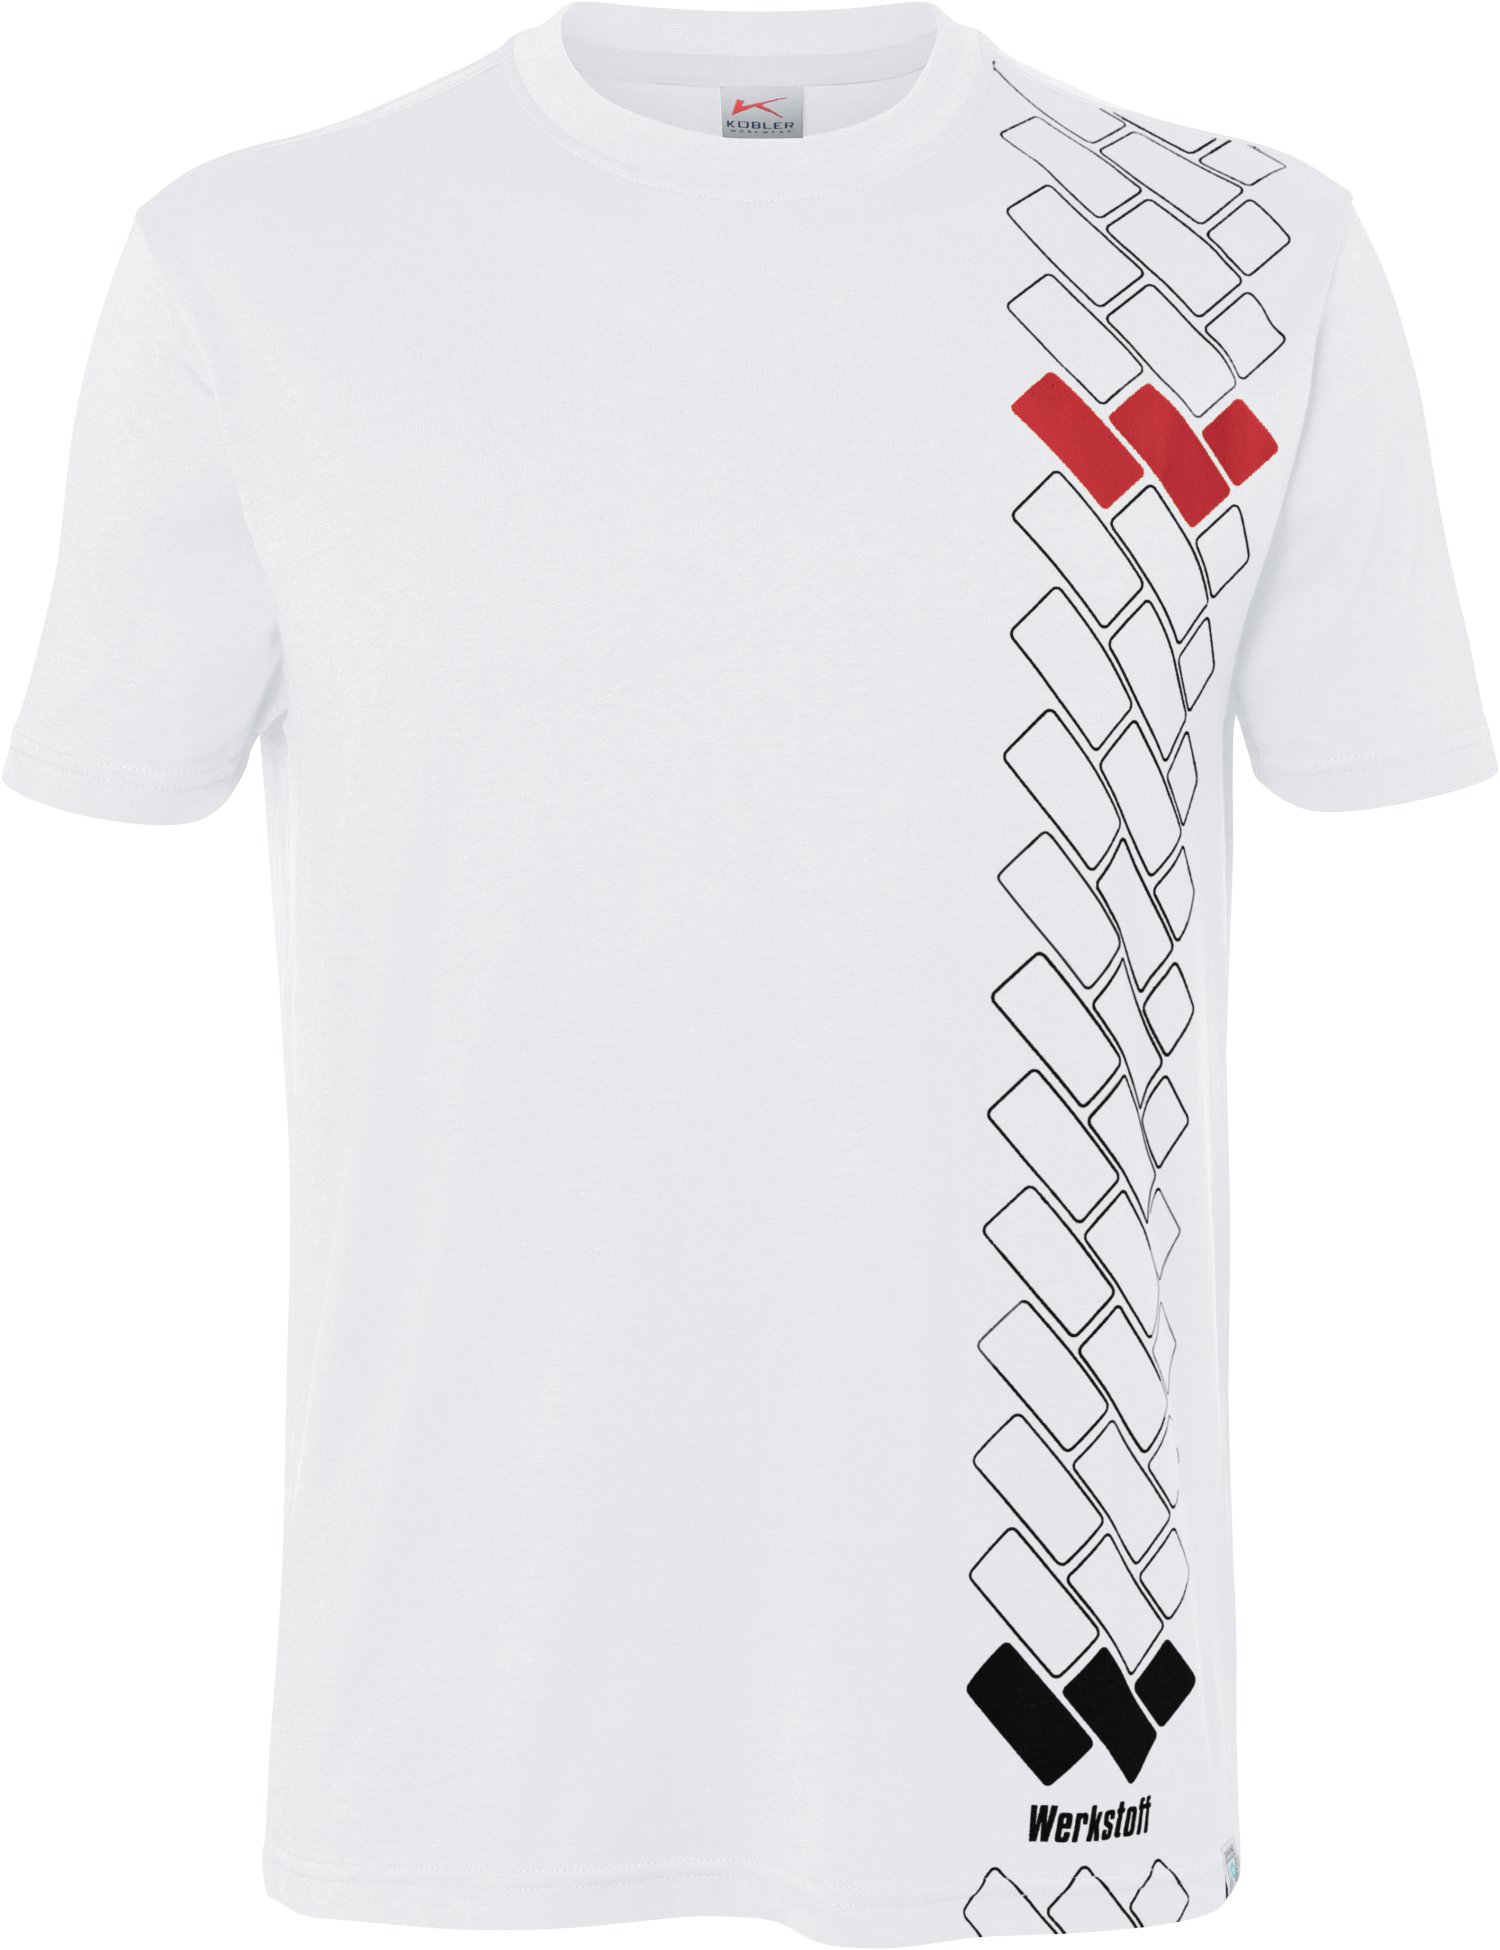 WERKSTOFF T-Shirt Premium weiß XL | T-Shirts